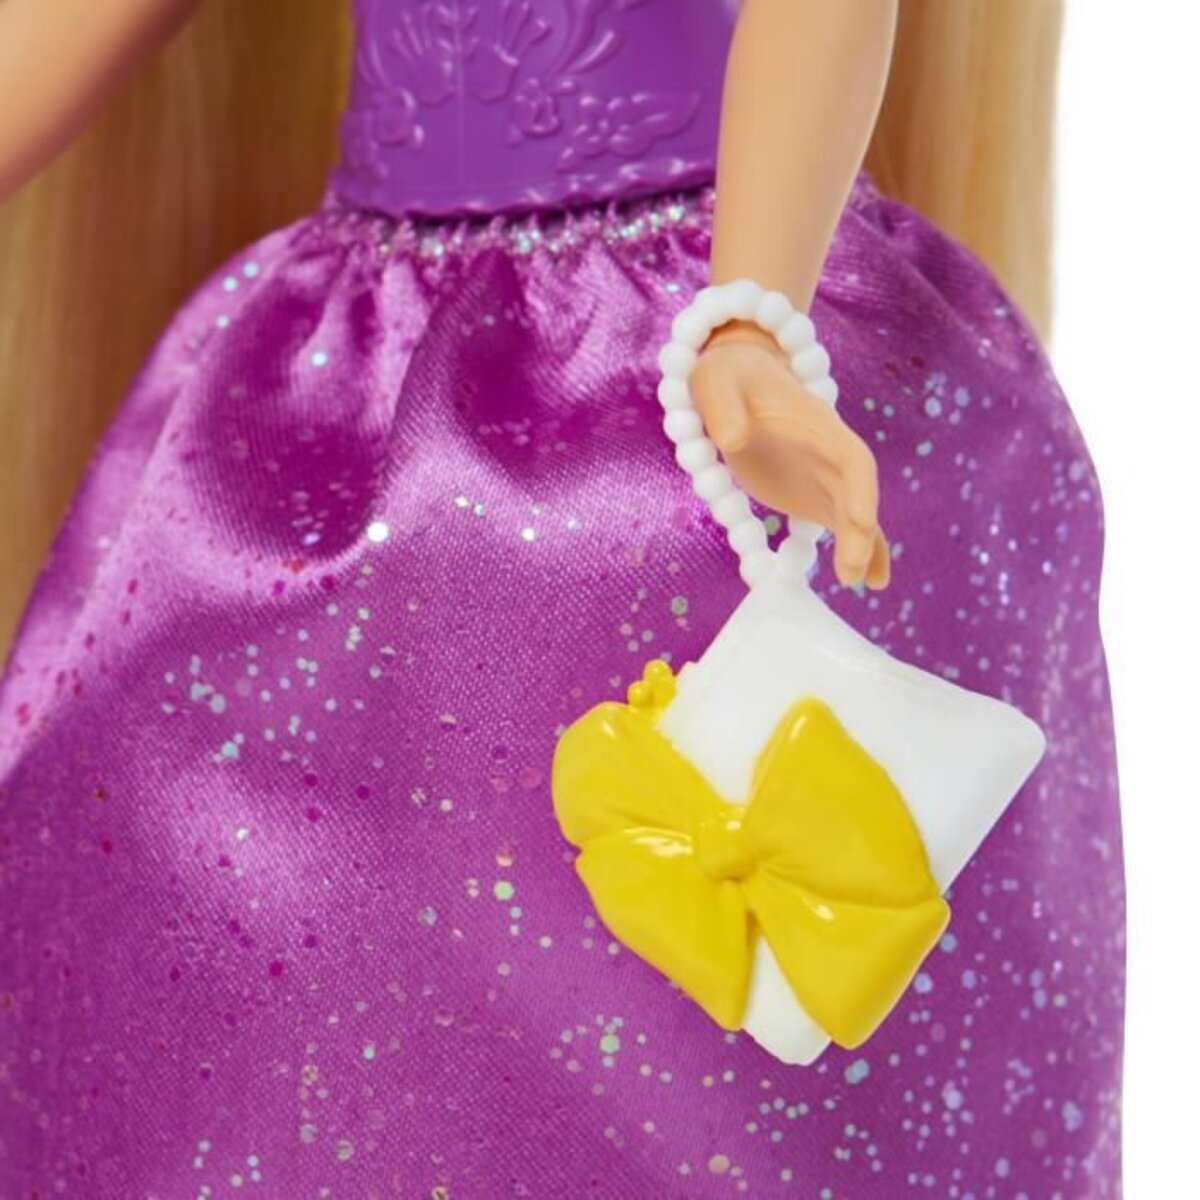 Disney princesses - poupée raiponce avec vêtements et accessoires